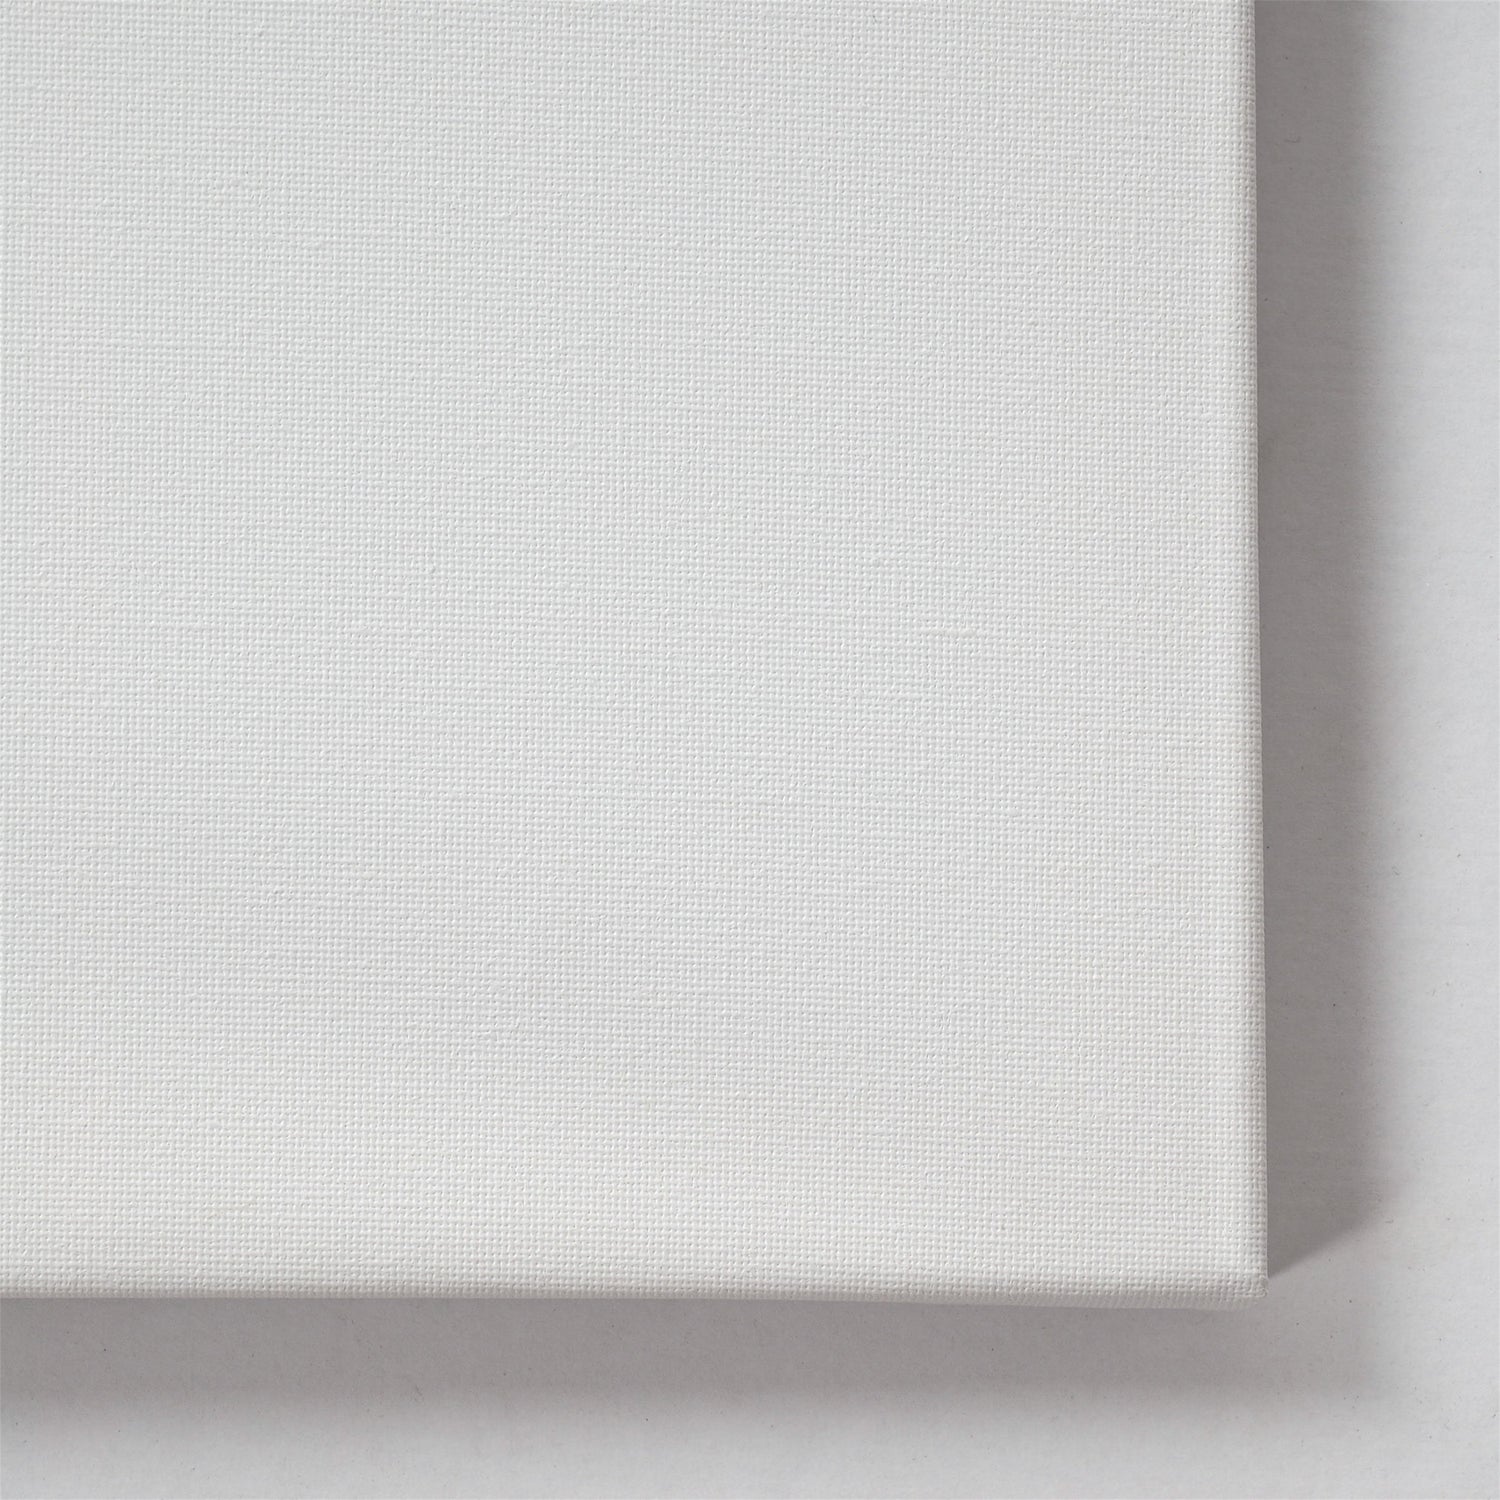 10 ART-STAR Leinwände | 50x70 cm | auf Keilrahmen, 100% Baumwolle